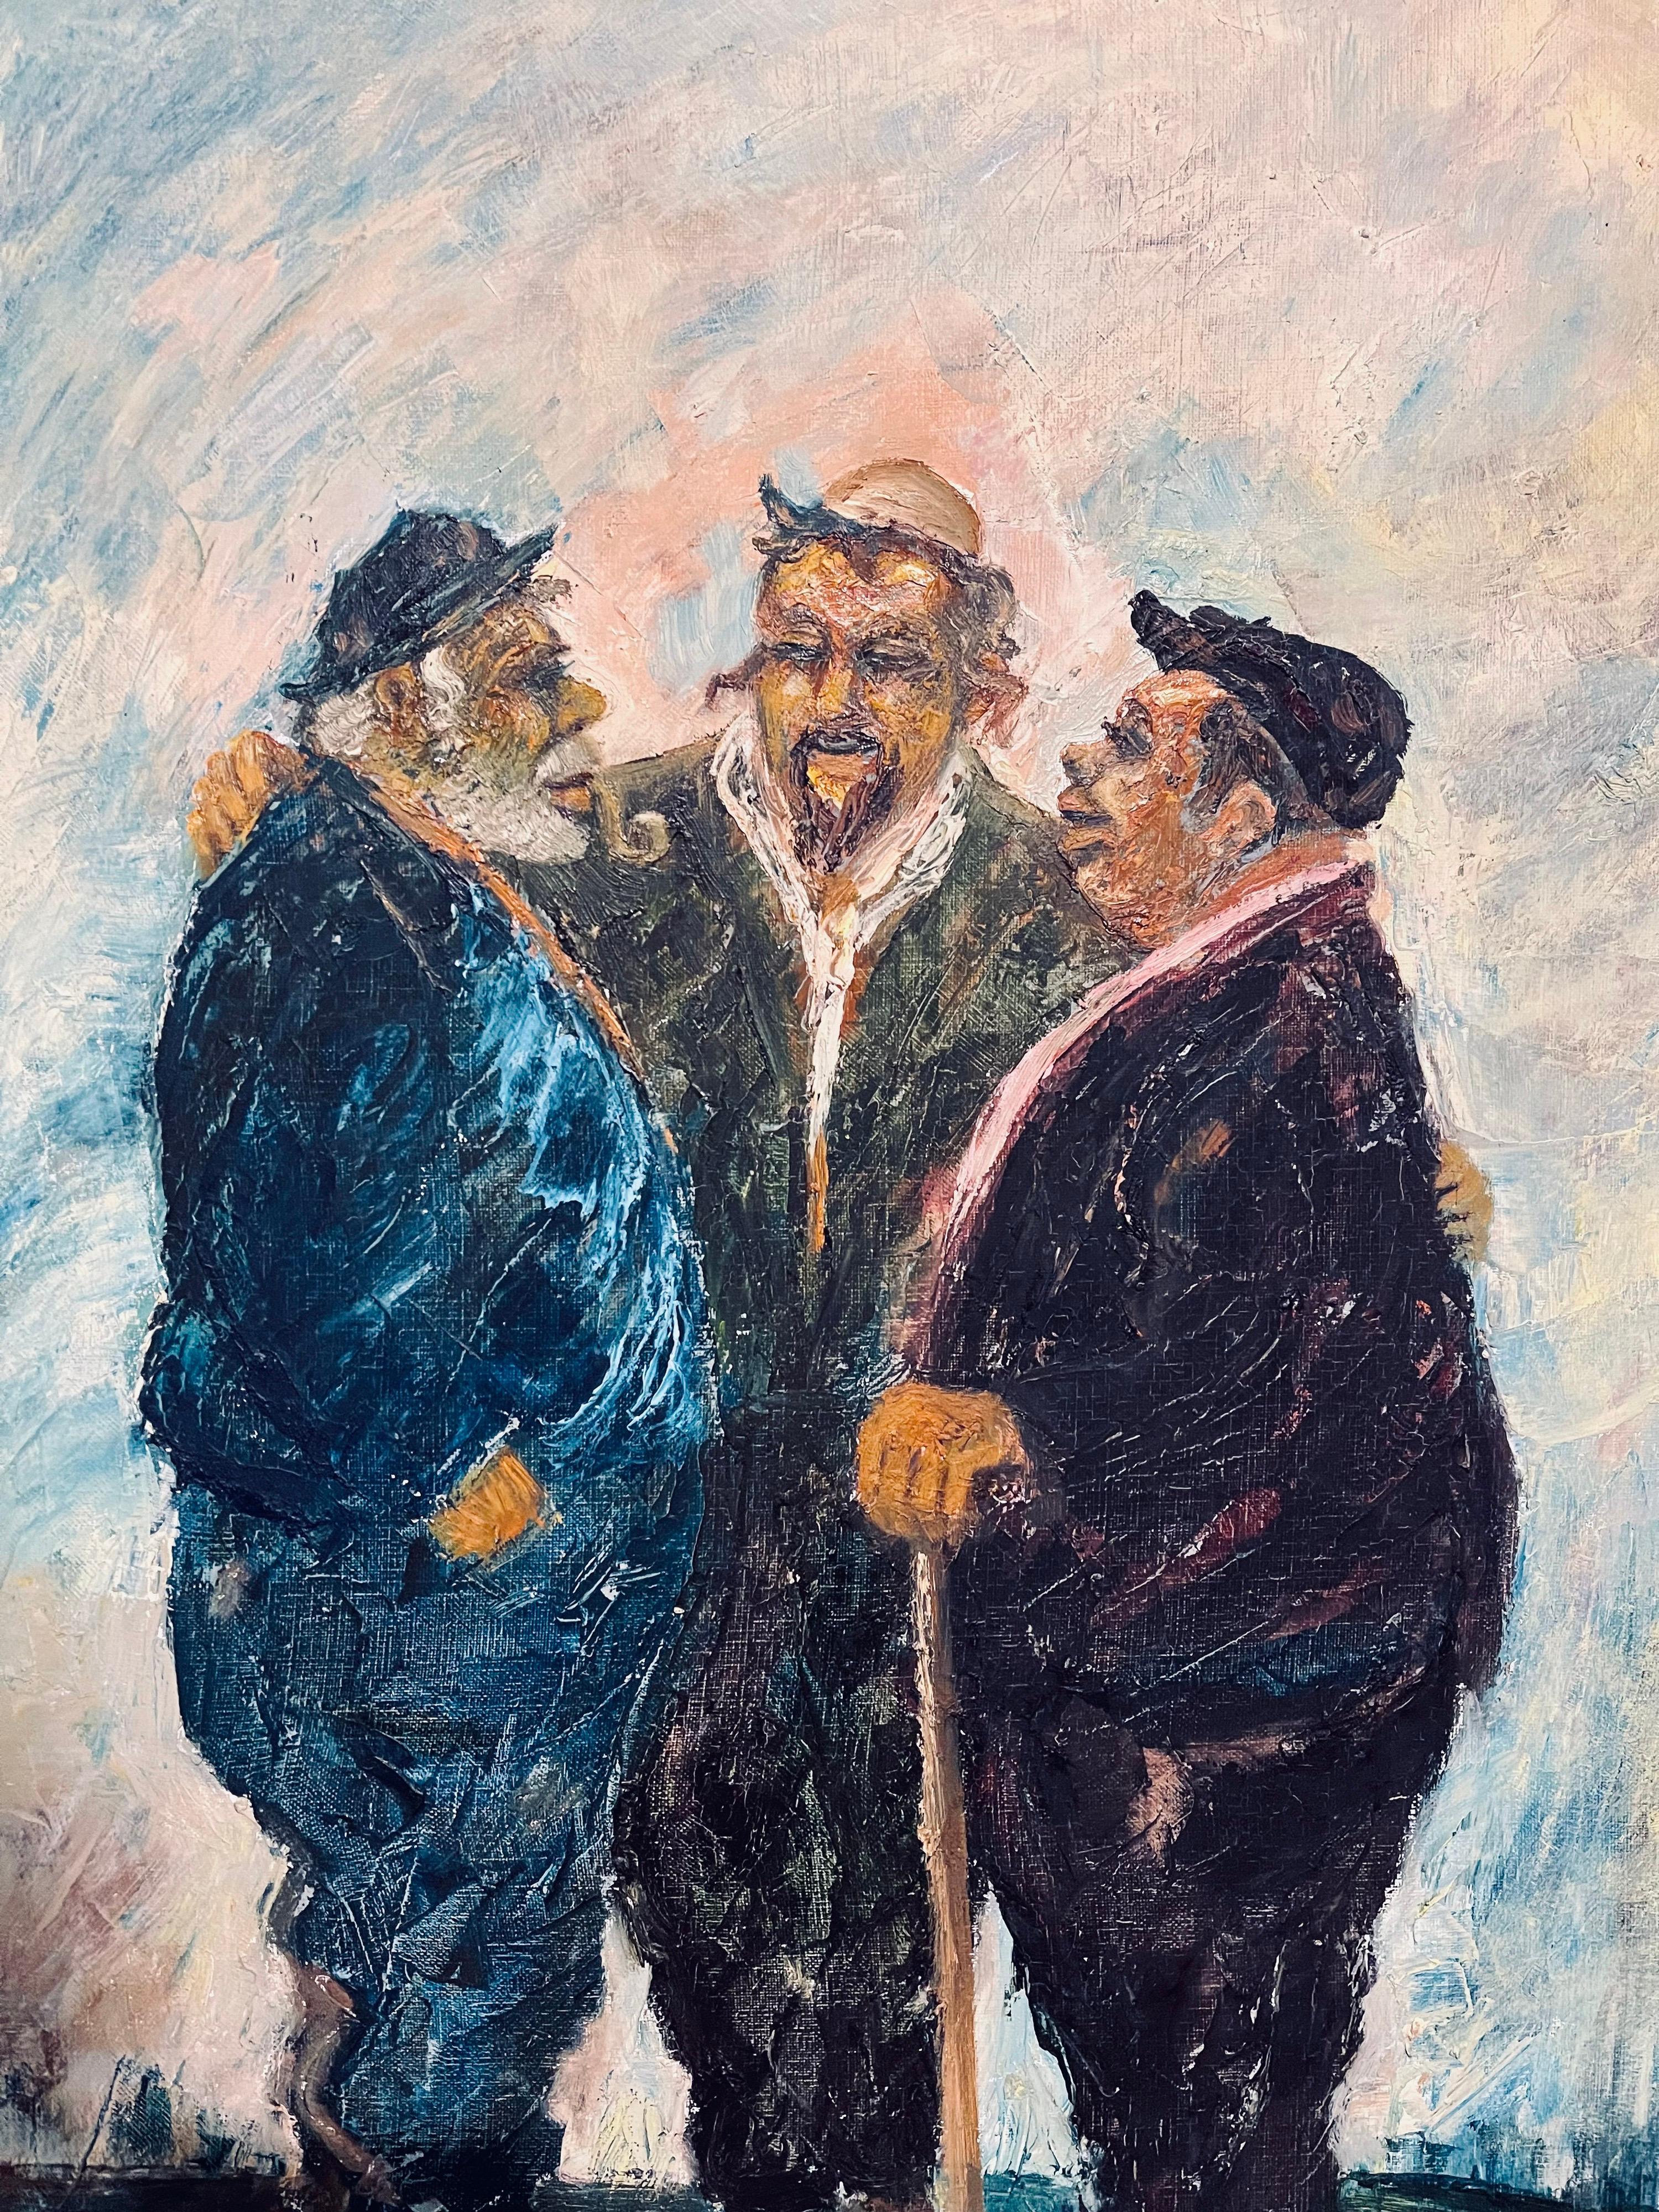 Il représente des hommes juifs du Moyen-Orient de descendance séfarade. Au moins un semble être un rabbin.

ALBERT GOLDMAN Né à Alexandrie, en Égypte, en 1922, Albert Goldman a commencé à dessiner et à peindre à l'âge de 8 ans. Il a commencé sa